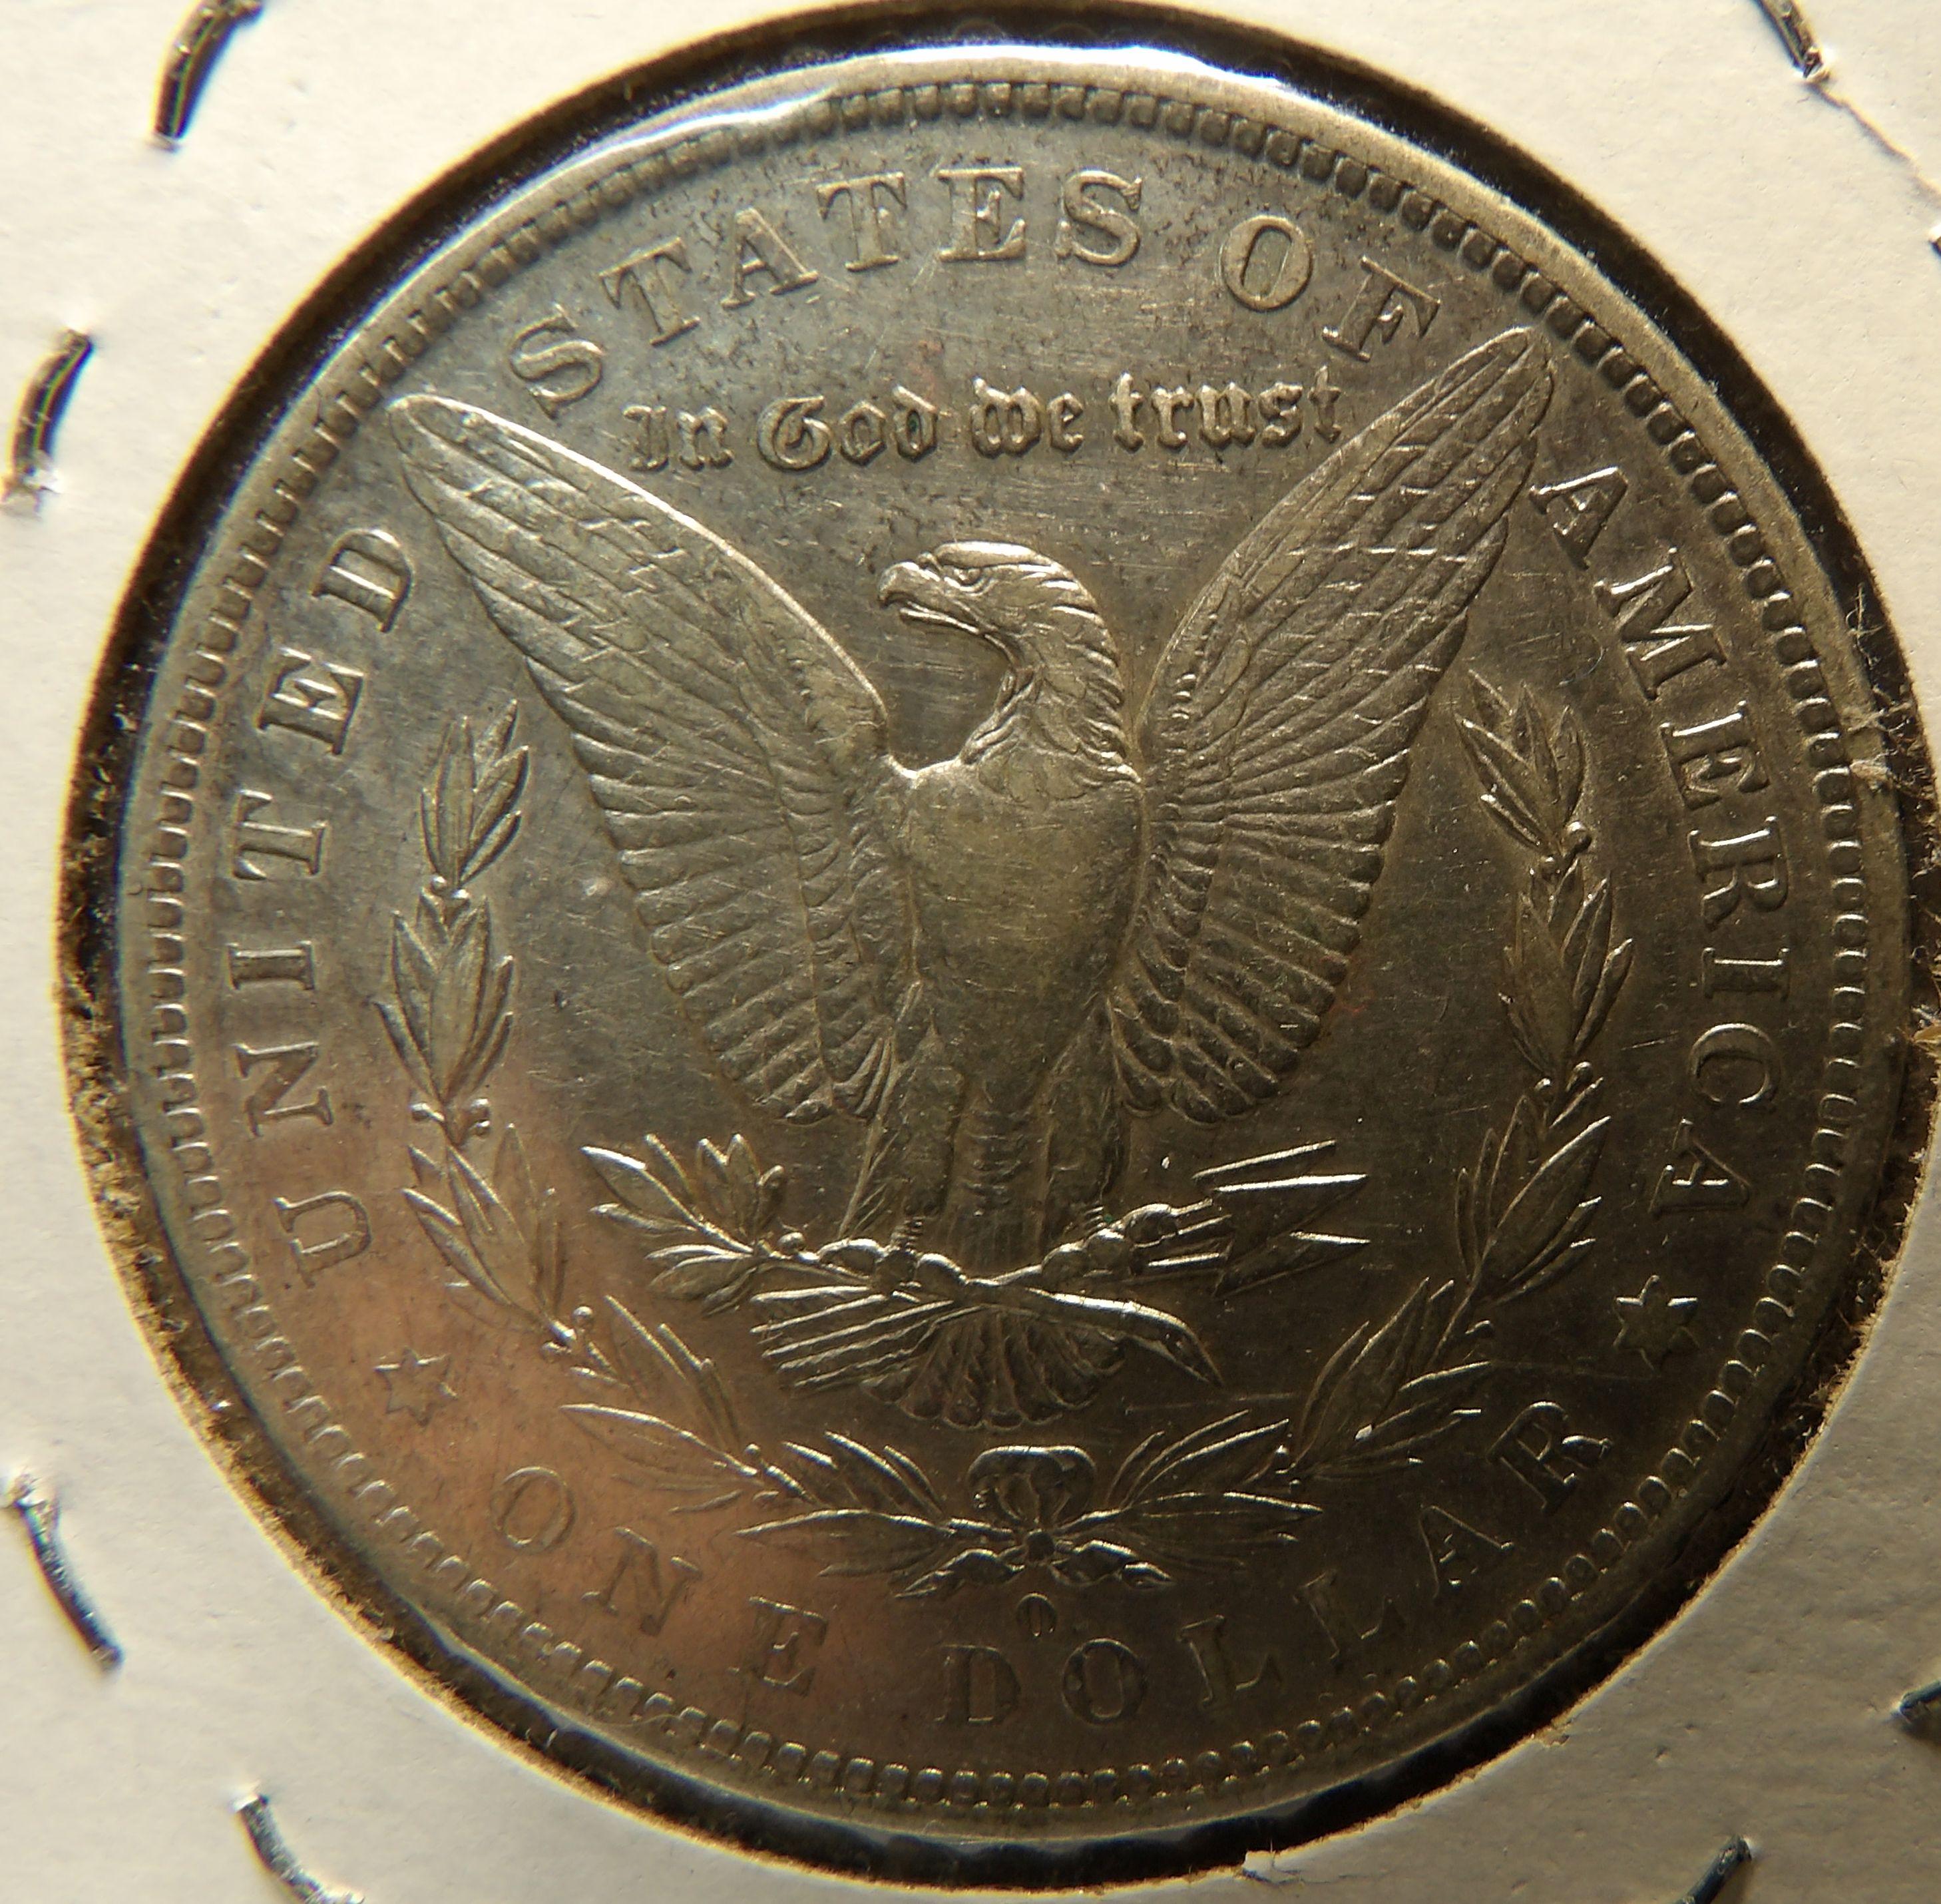 1883 O Morgan Dollar - some obverse toning